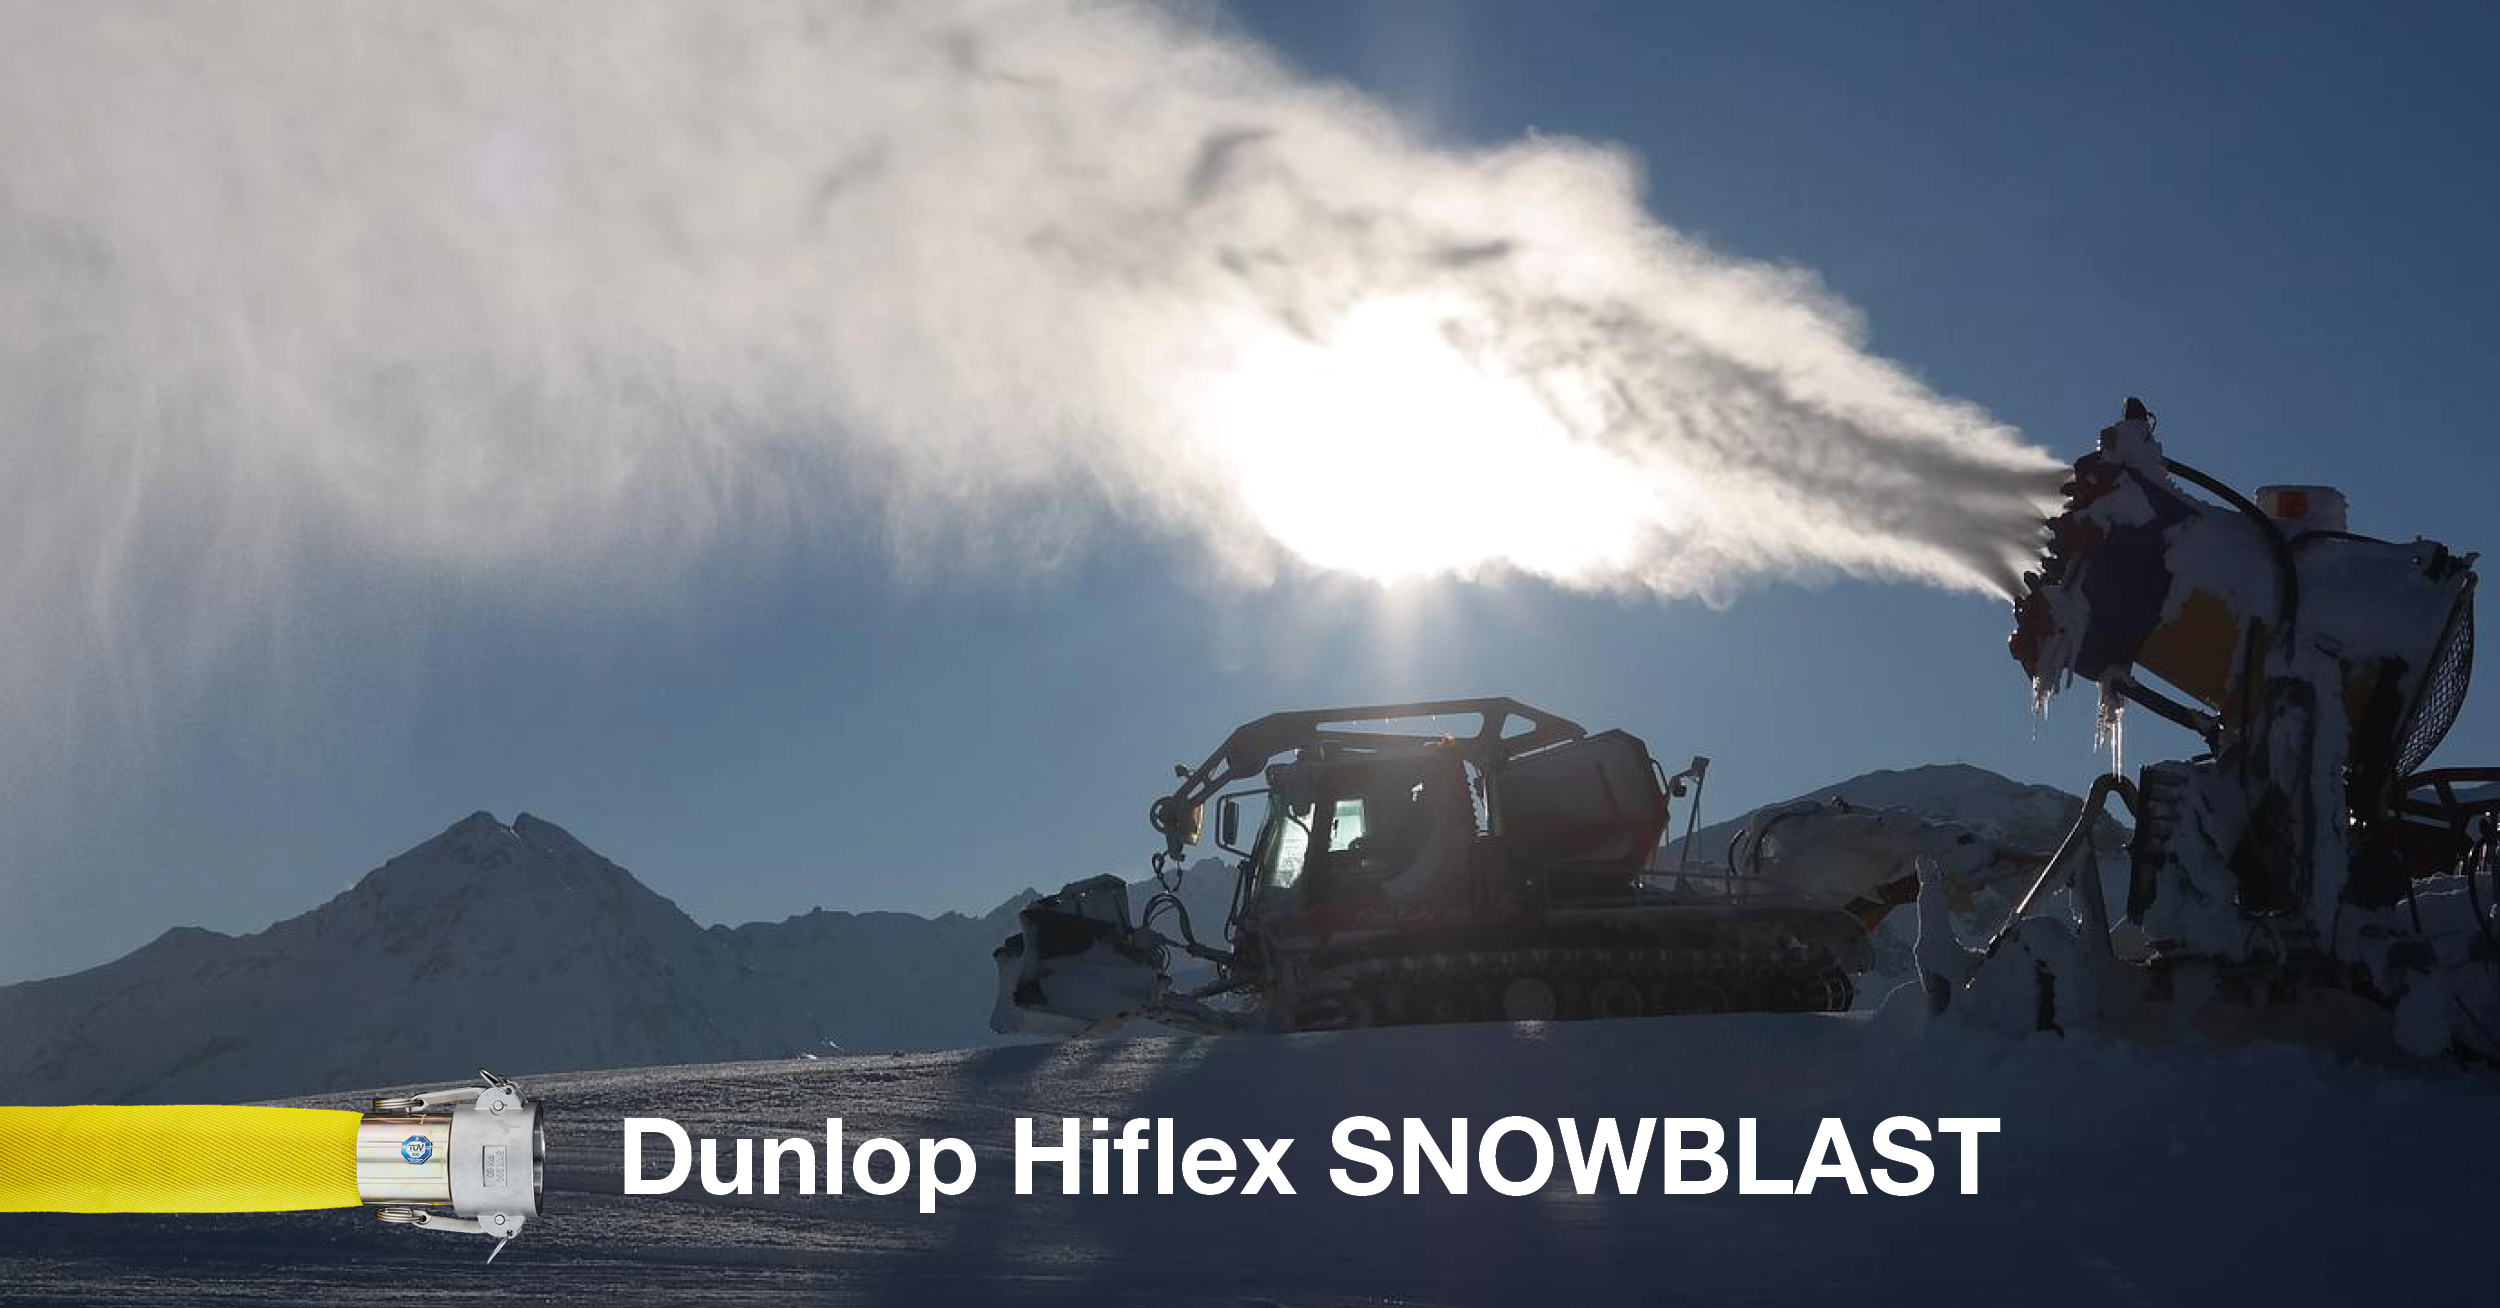 Dunlop Hiflex Snowblast slange for snokanoner